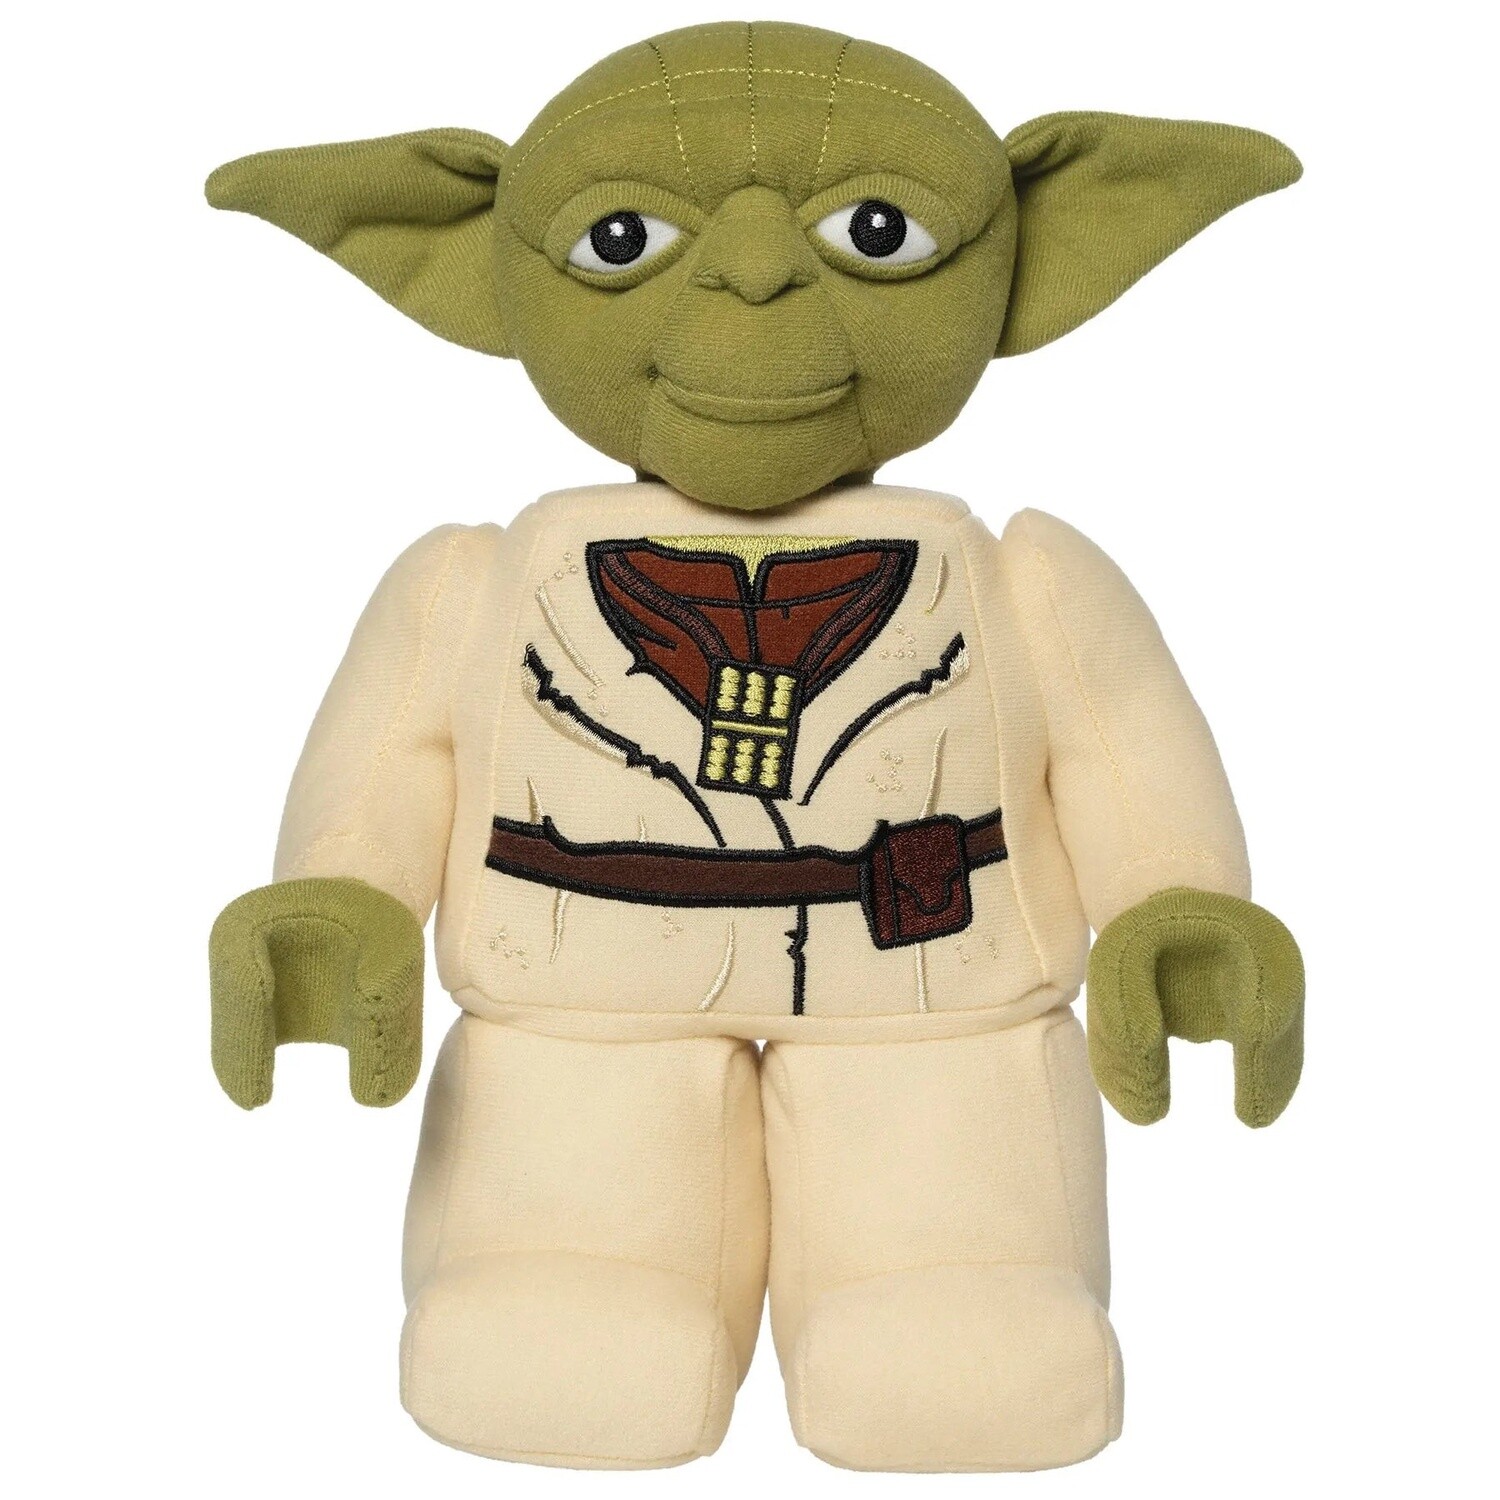 Lego Star Wars Yoda Plush